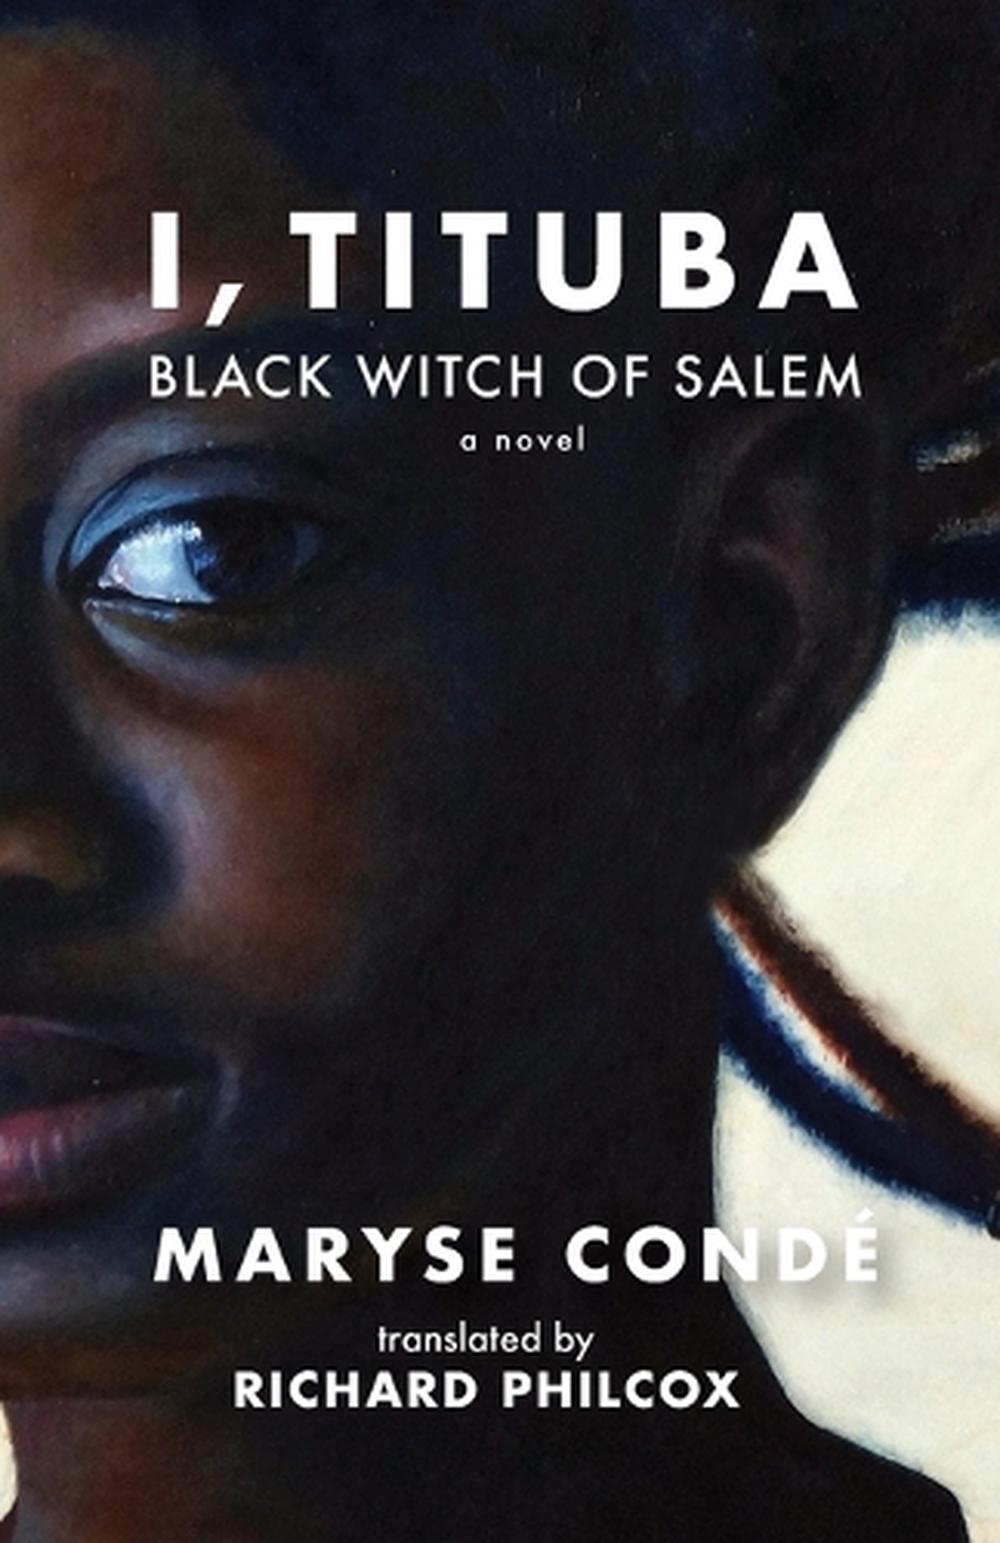 maryse condé i tituba black witch of salem